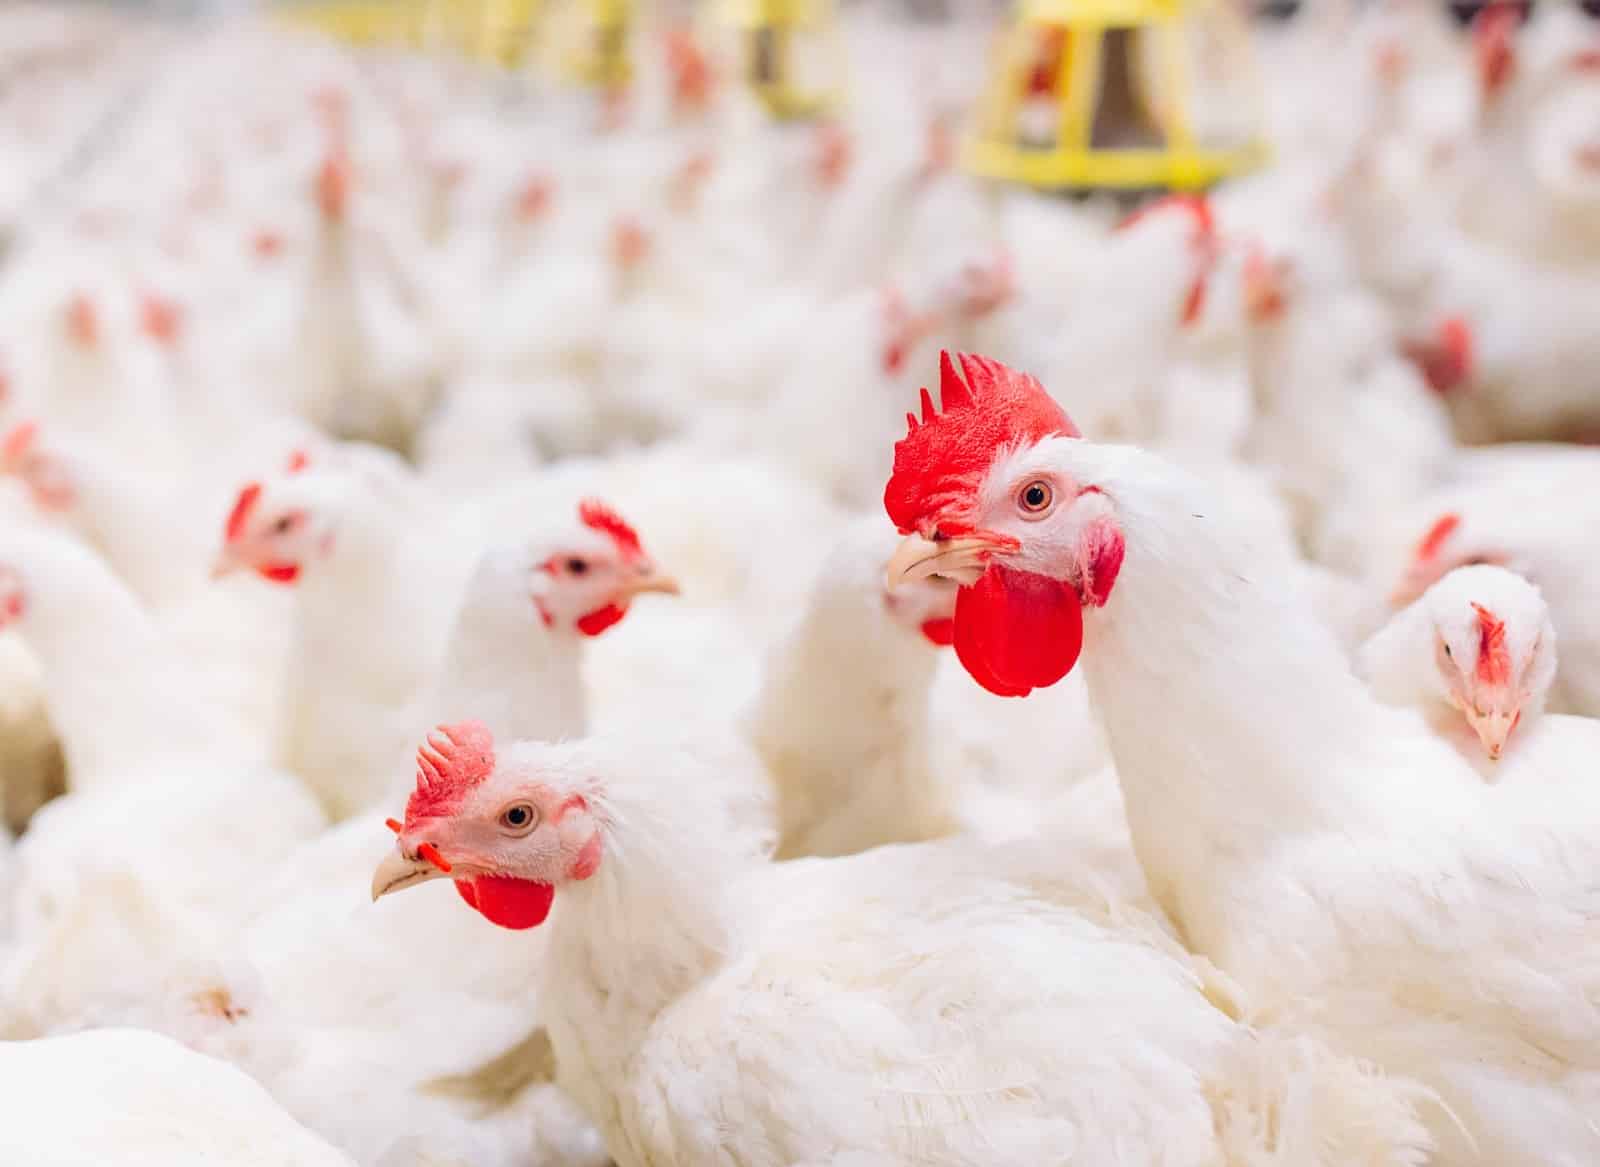 McDonald’s convierte a Costa Rica en primer país latino donde el 100% de sus huevos de gallinas son libres de jaula